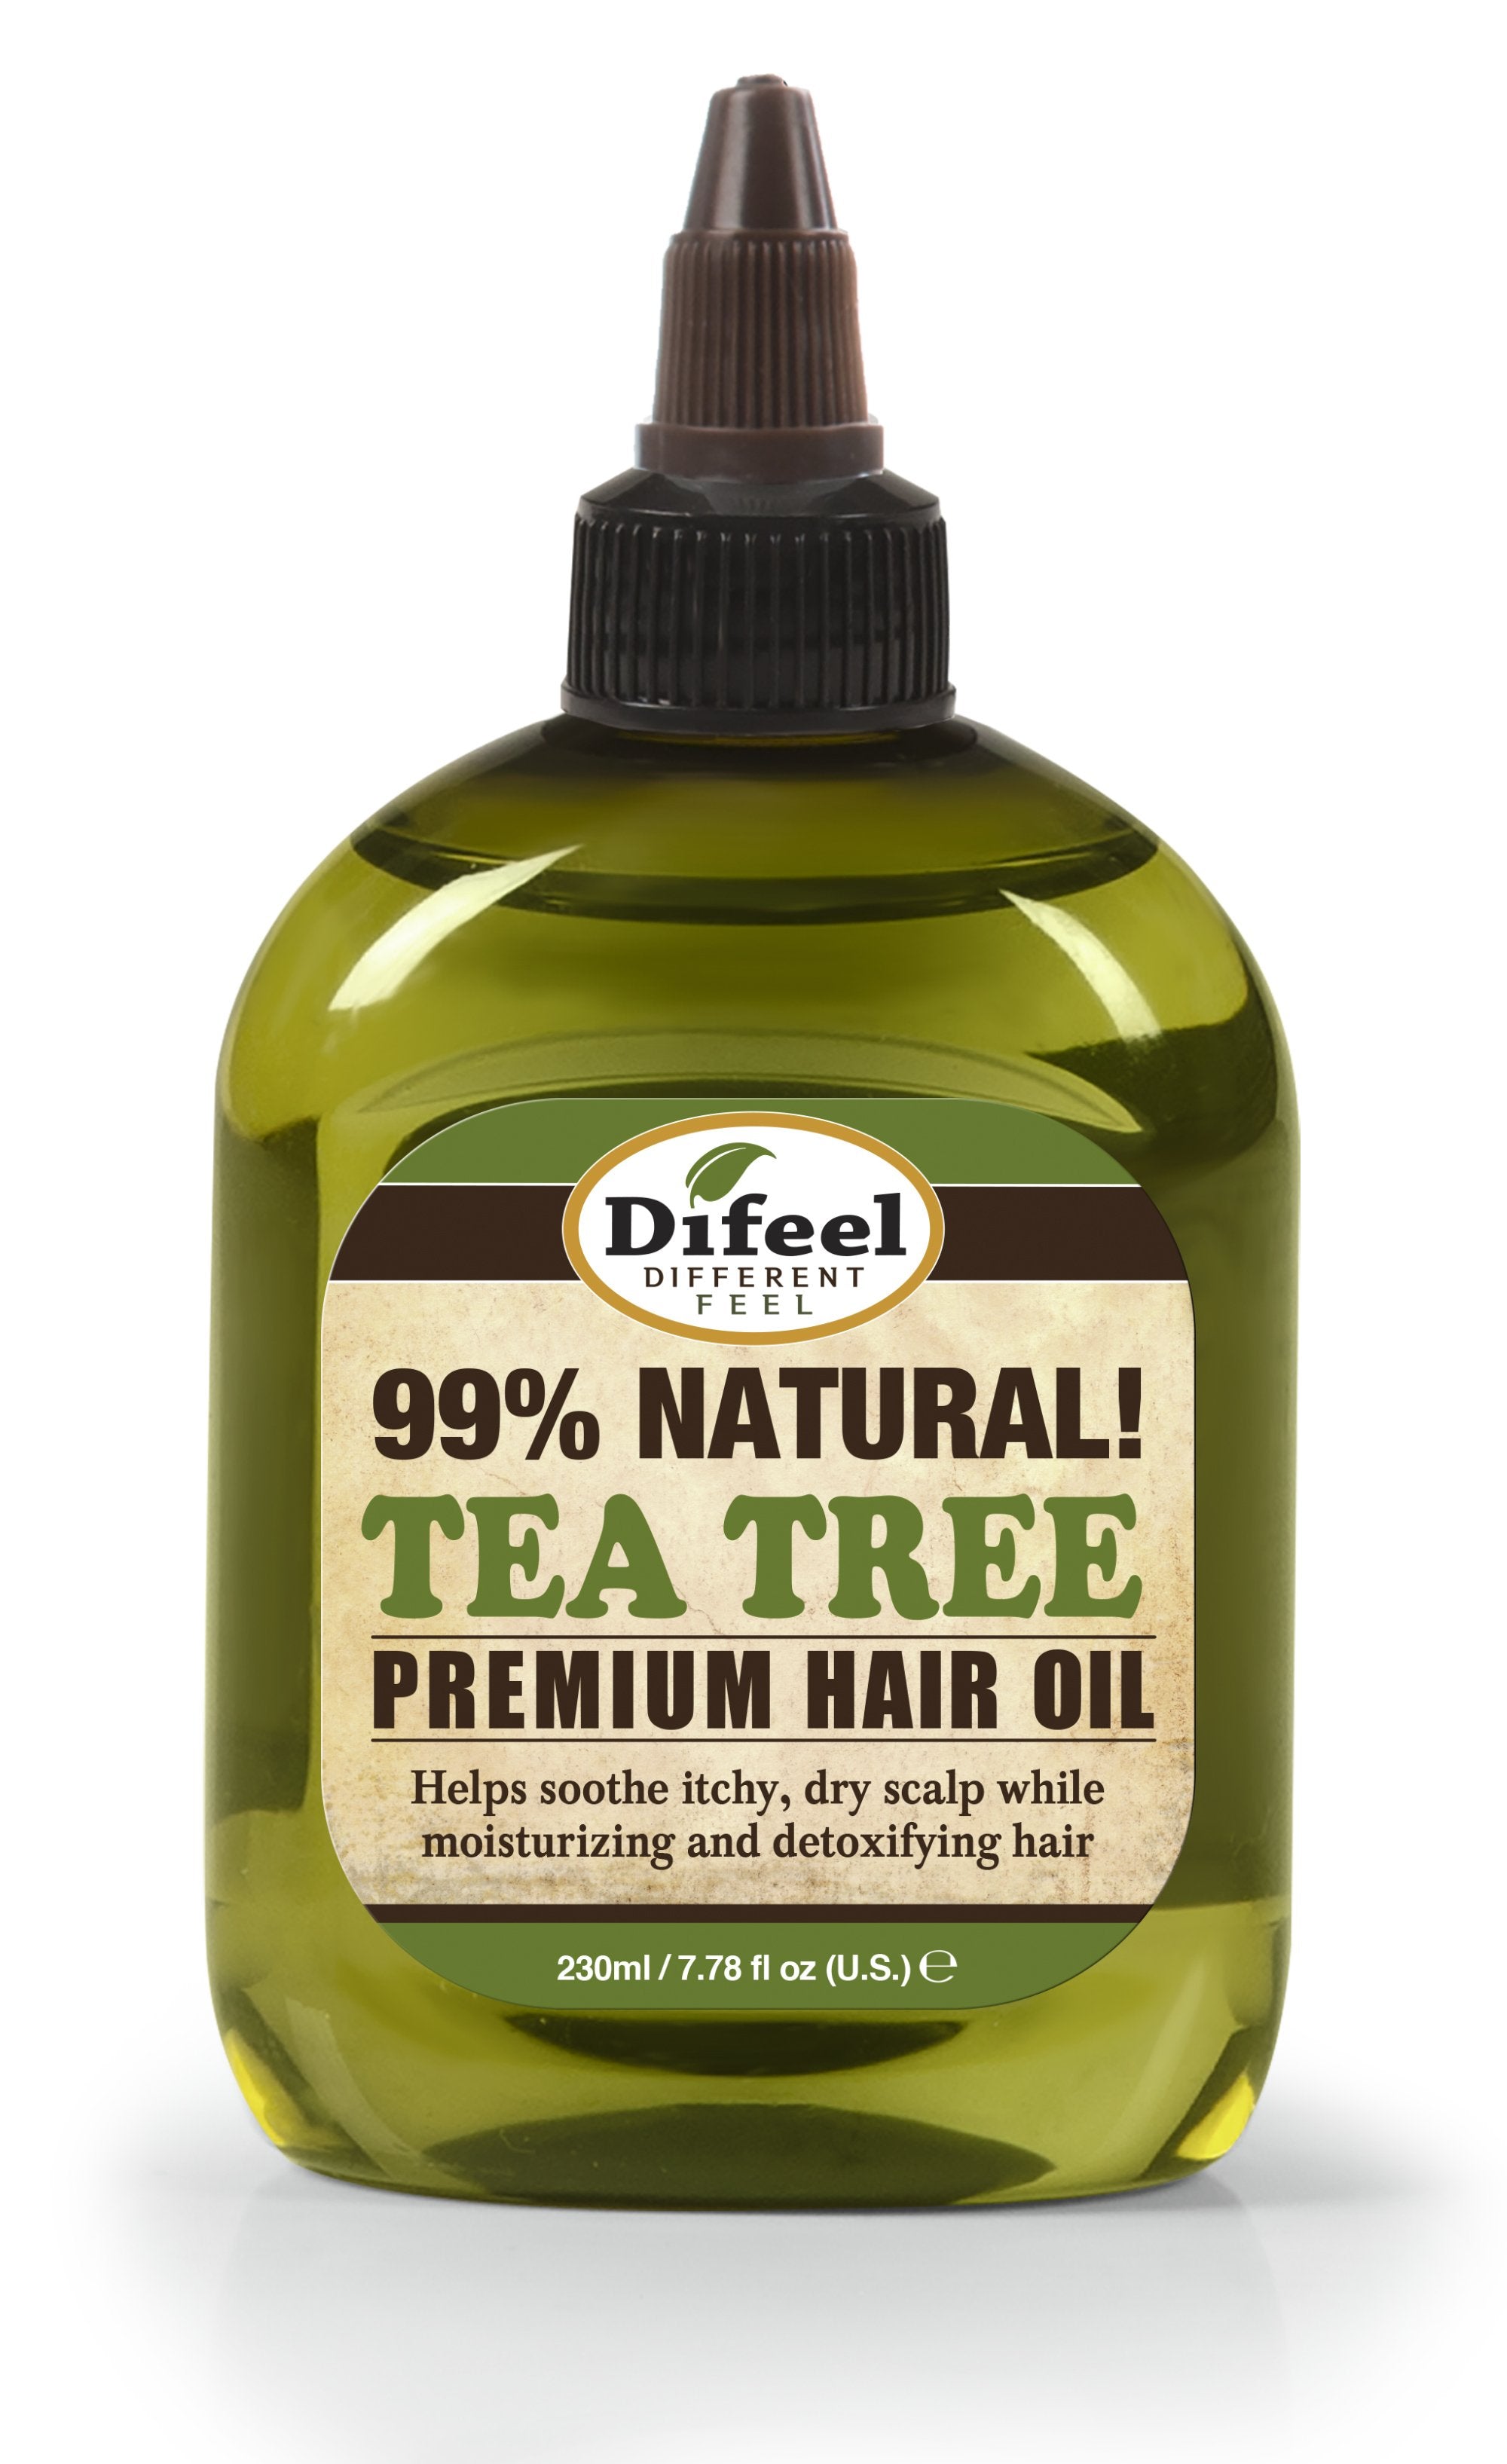 Difeel Premium Natural Hair Oil - Tea Tree Oil 8 oz. (PACK OF 2)